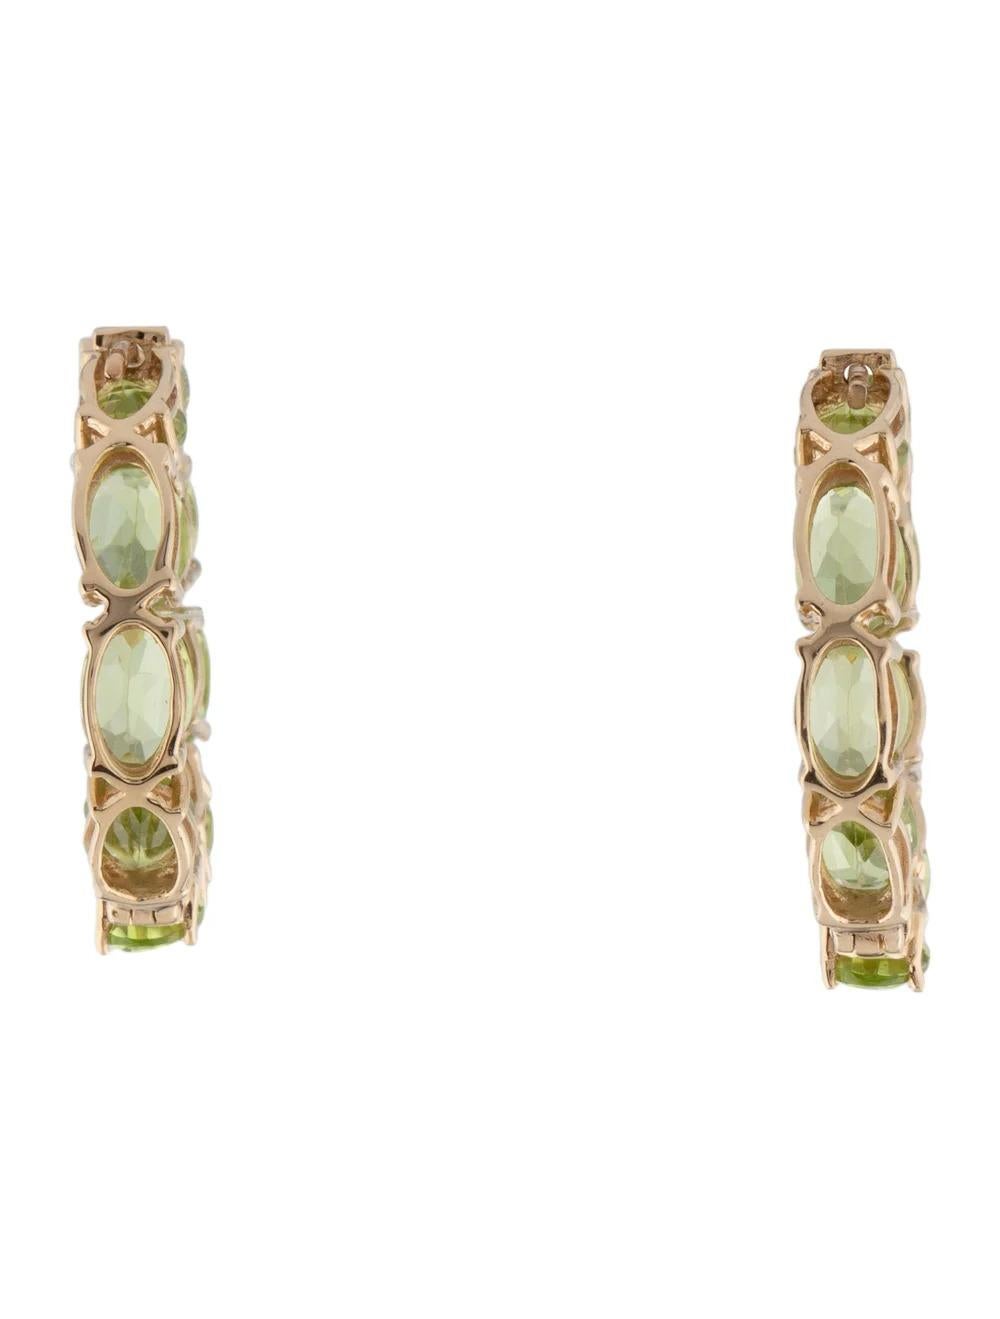 Oval Cut Designer 14K Peridot Inside-Out Hoop Earrings, 9.03ctw, Green Gemstone Jewelry For Sale